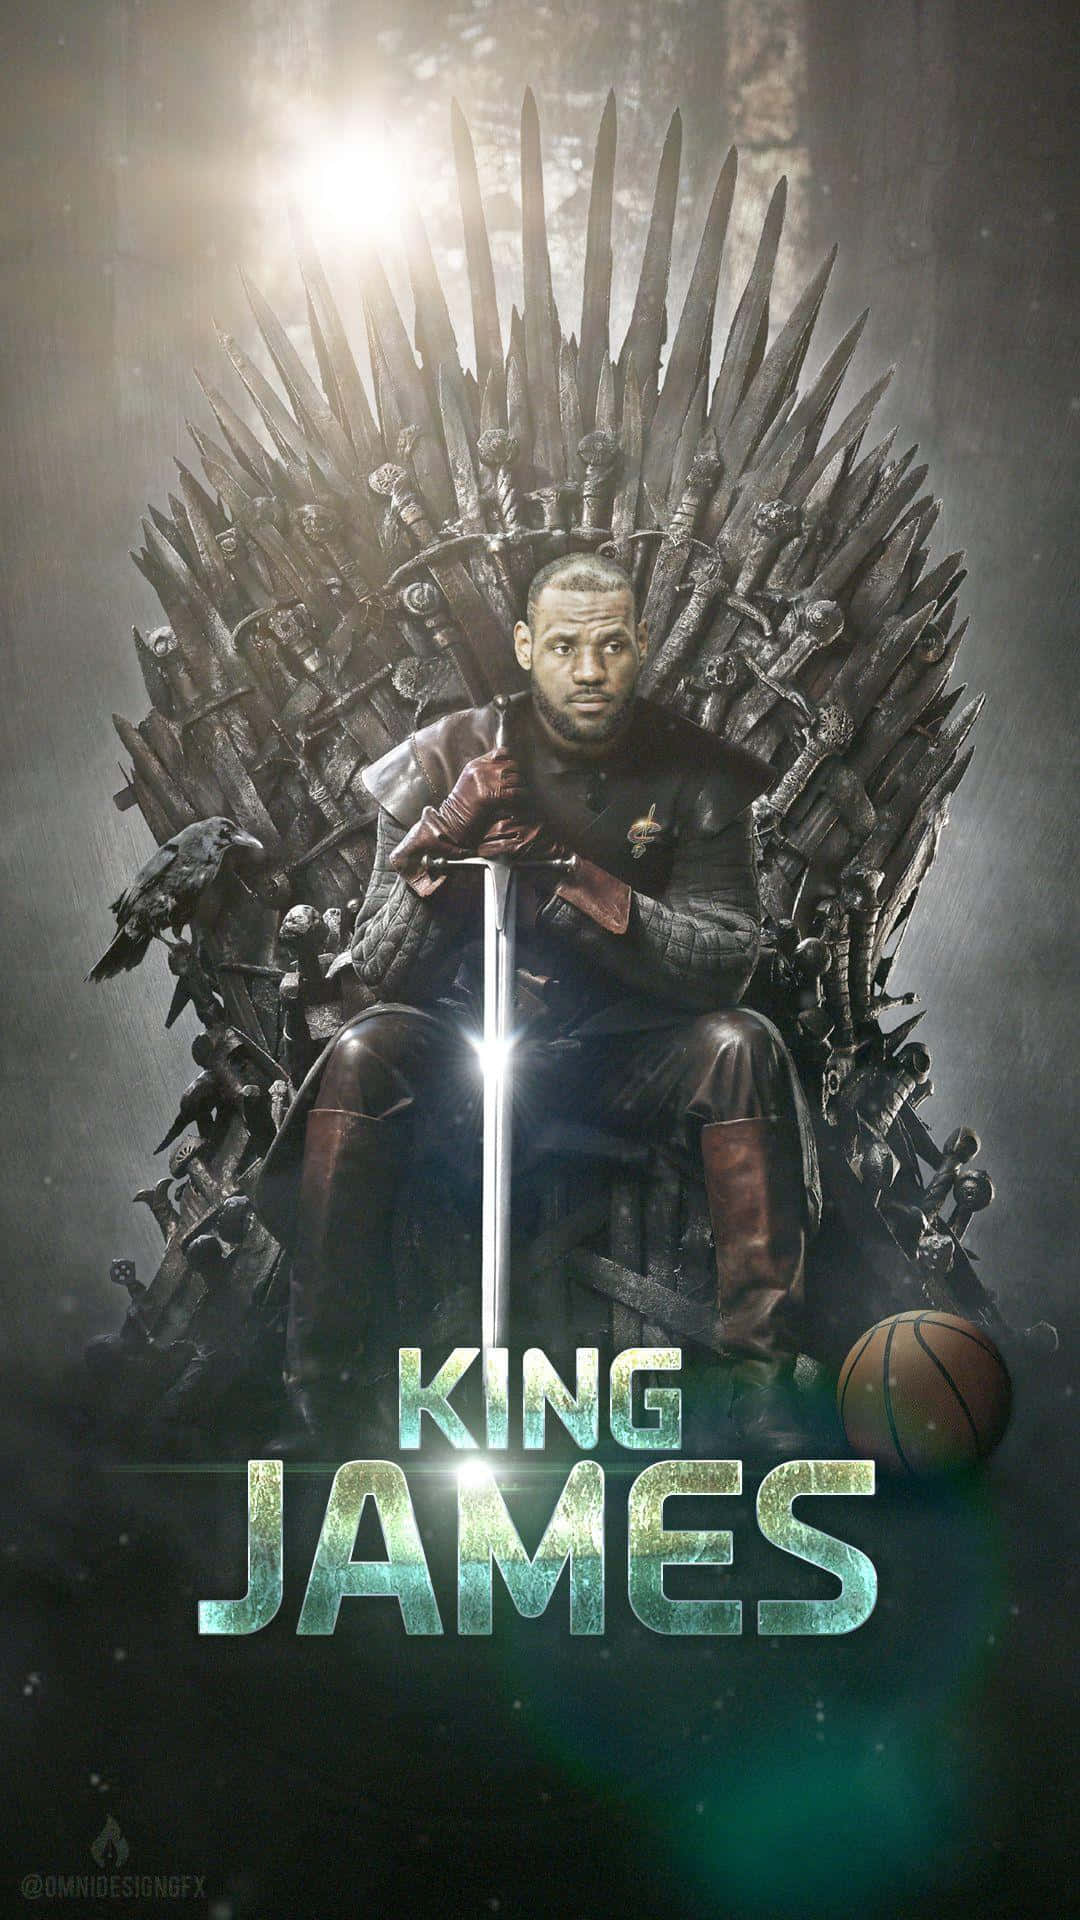 King Lebron James - The King of Basketball Wallpaper